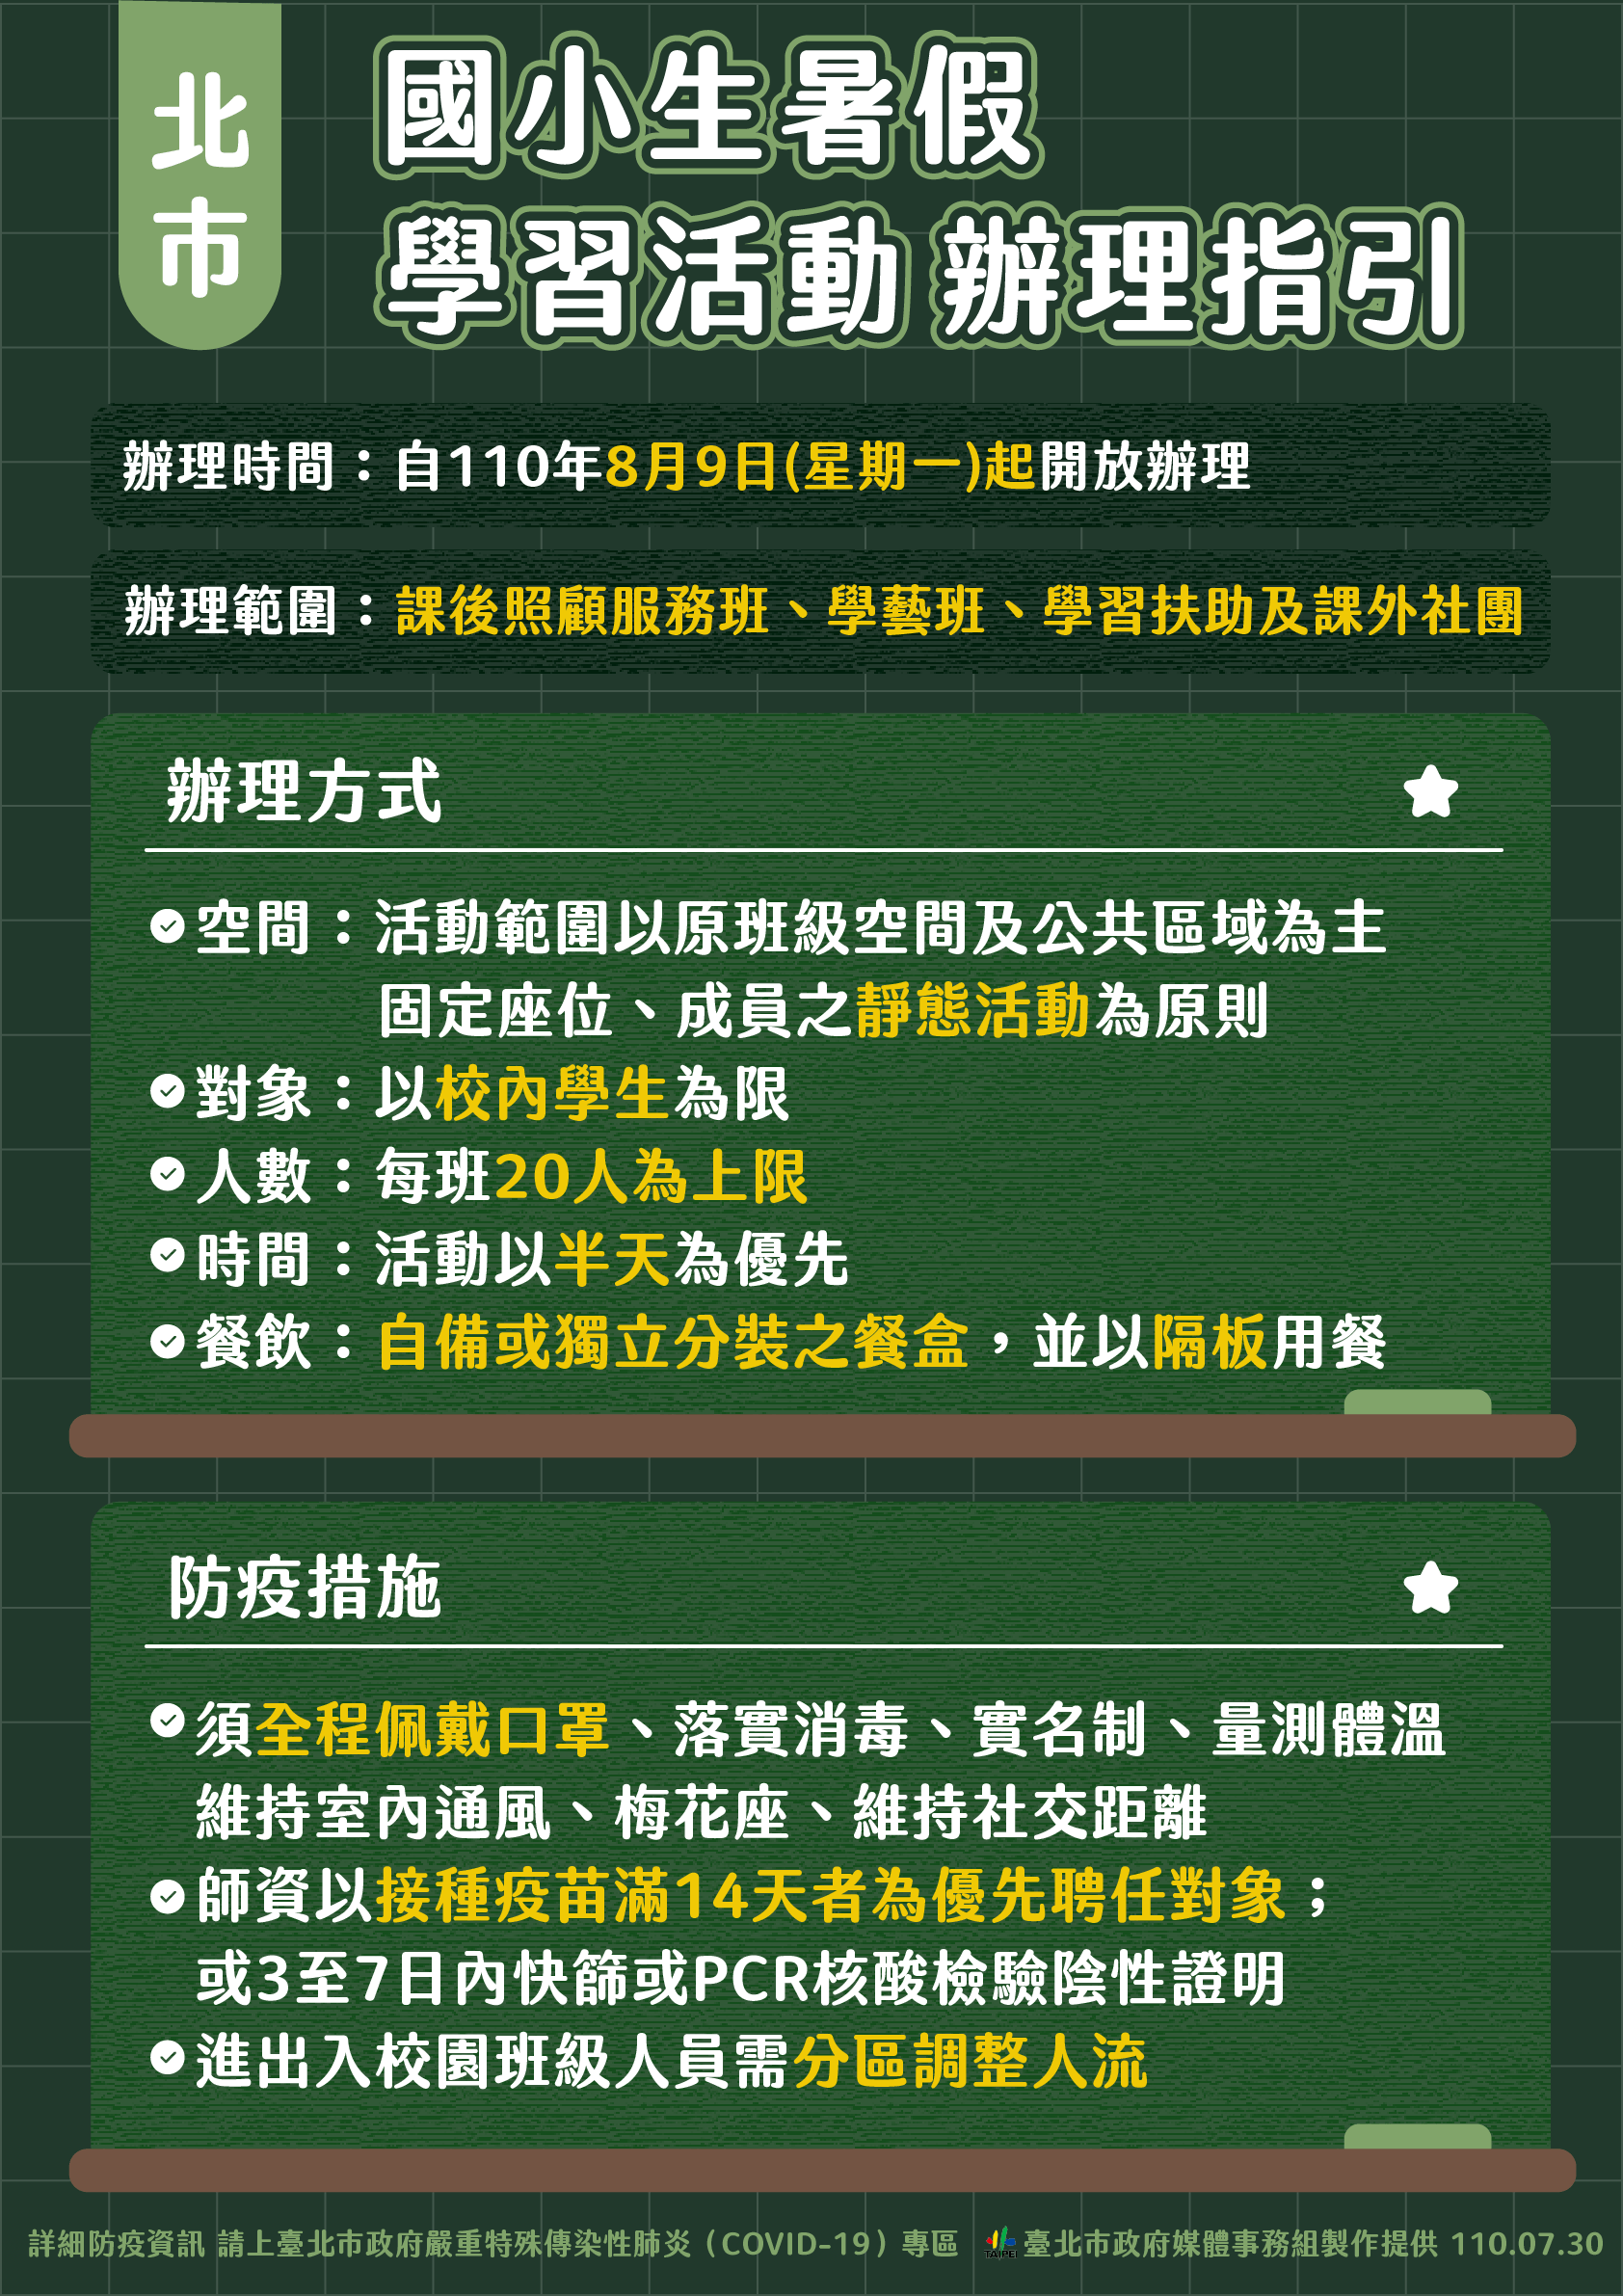 Ketentuan-ketentuan wajib terkait penyelenggaraan kegiatan musim panas bagi murid tingkat SD. Sumber: Pemerintah Kota Taipei